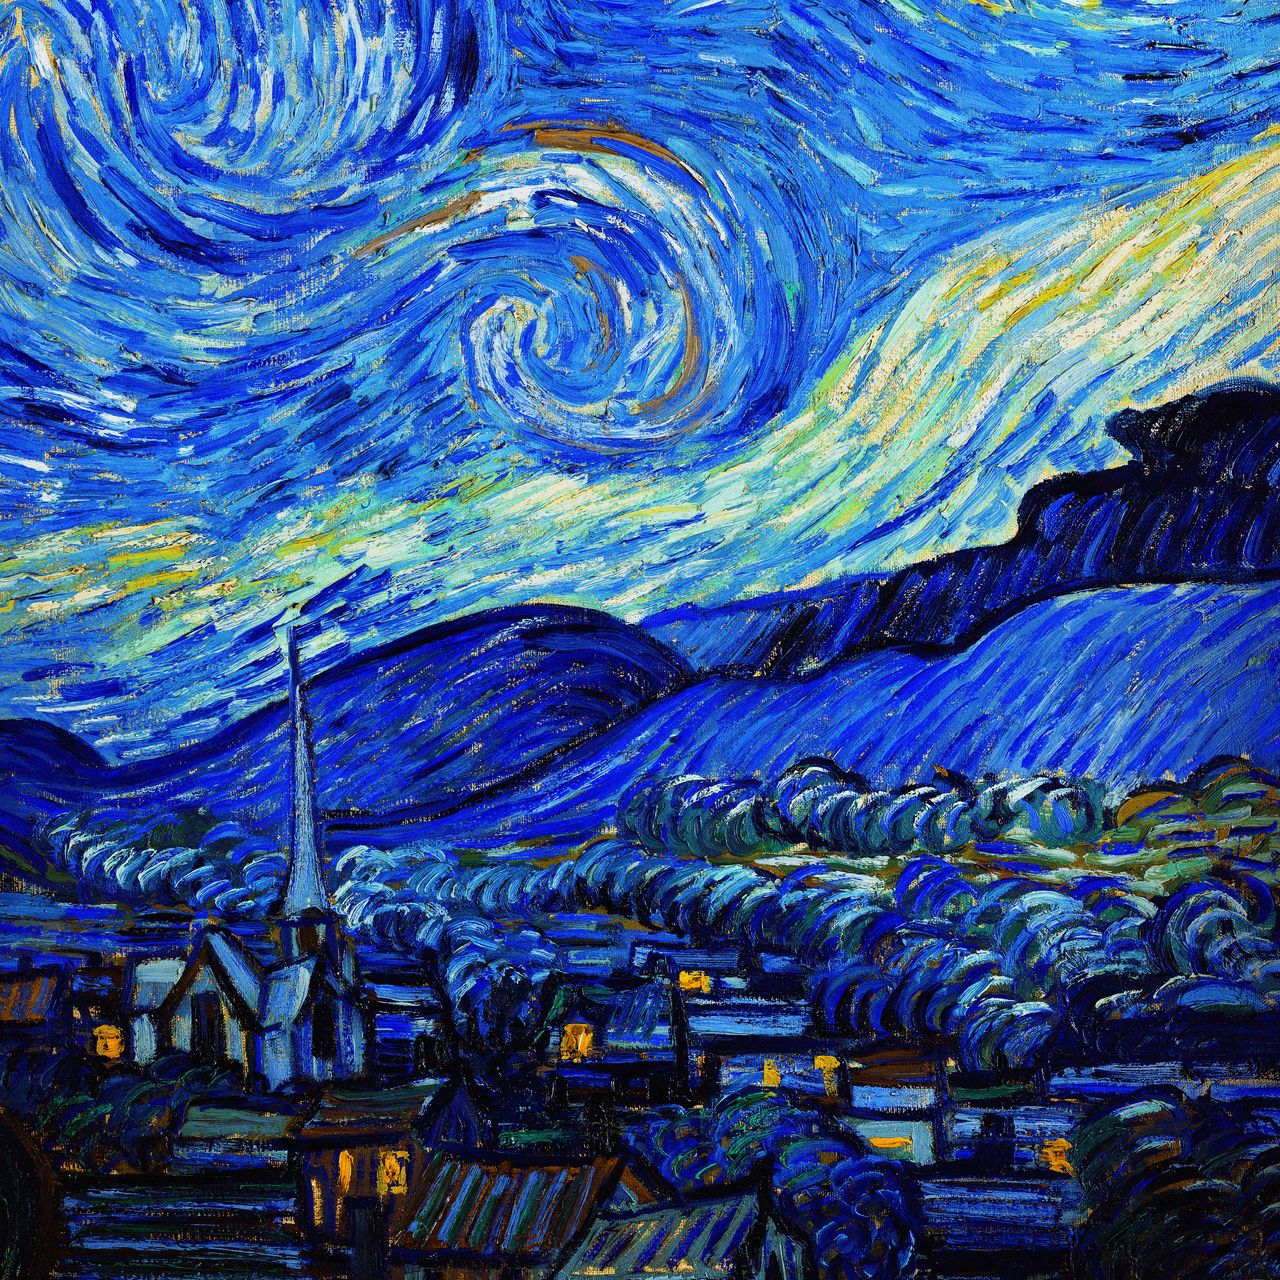 Starry Night là một trong những bức tranh nổi tiếng nhất của Van Gogh, kết hợp giữa tâm trạng và phong cách nghệ thuật đầy sáng tạo. Hãy tải hình nền này để chiêm ngưỡng tuyệt tác nghệ thuật đầy cảm xúc và tình cảm của nhà họa sĩ vĩ đại.